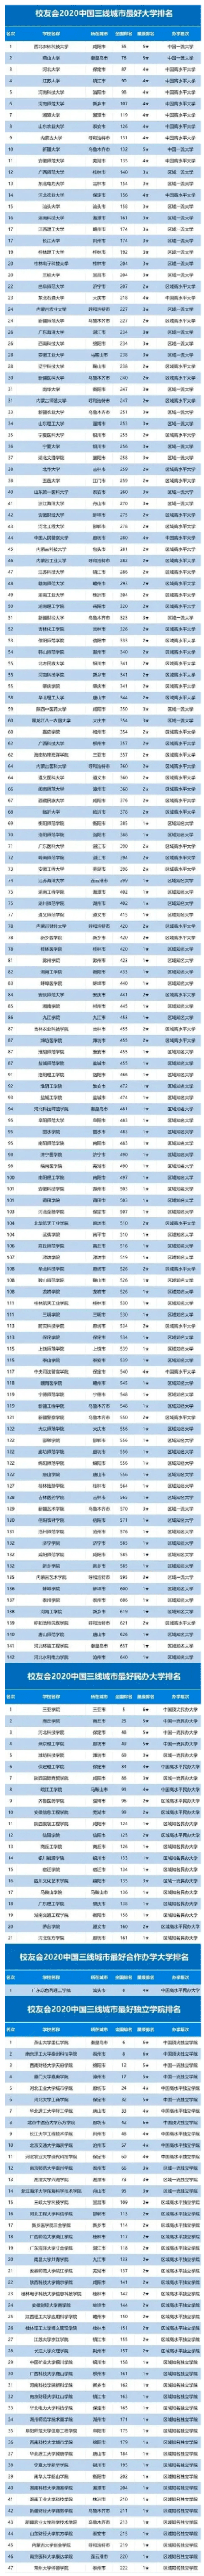 学校排名2020最新排名_2020年中国非双一流高校排名:103所高校上榜,大连大学(2)